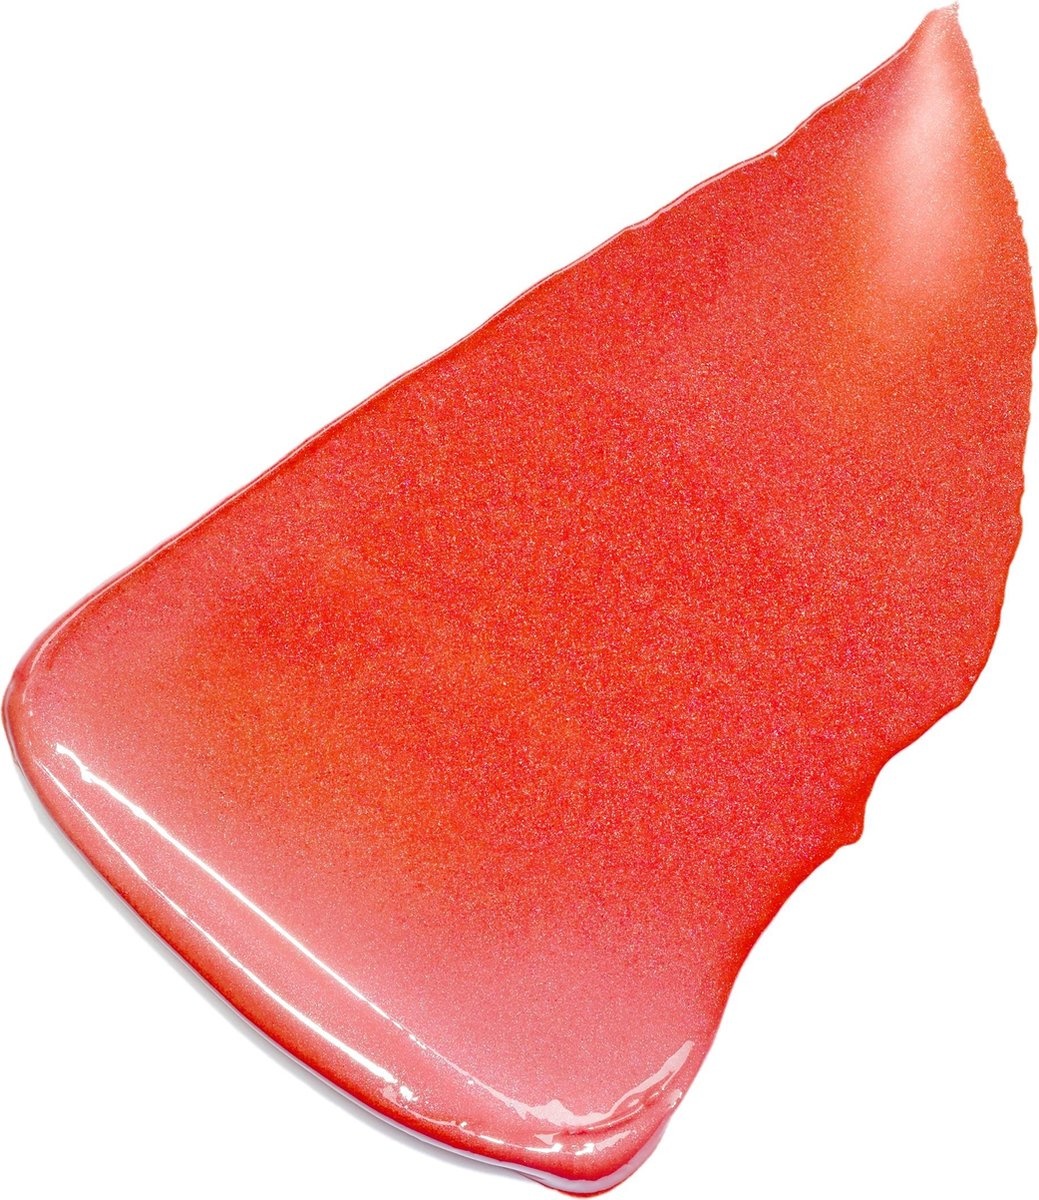 L'Oréal Paris Color Riche Lippenstift - 373 Magnetic Coral